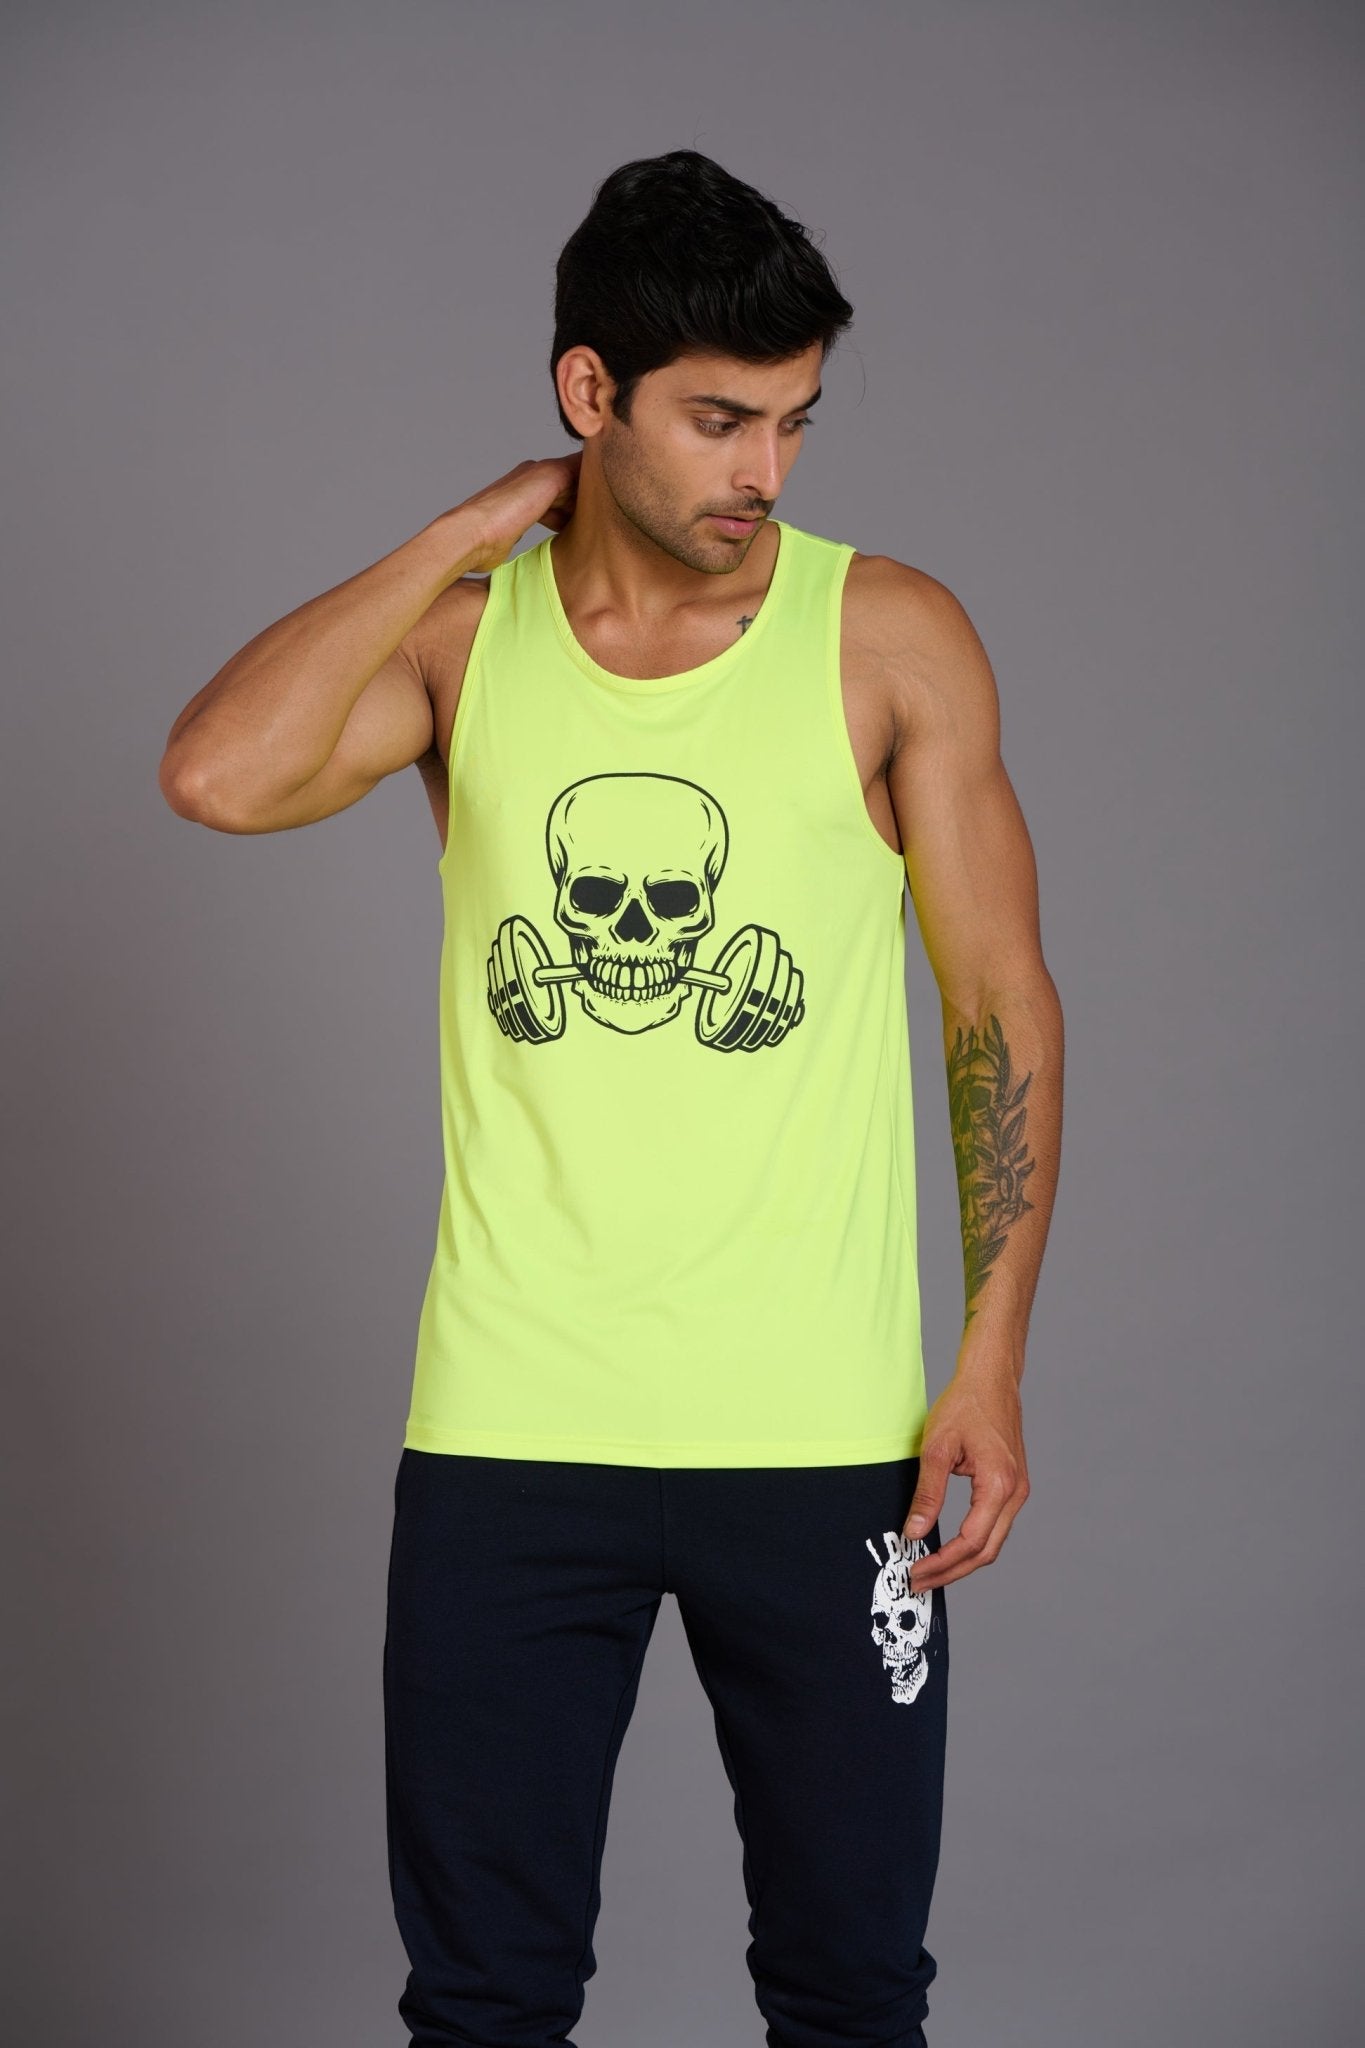 Devil Fit Printed Neon Vest (Activewear) for Men - Go Devil